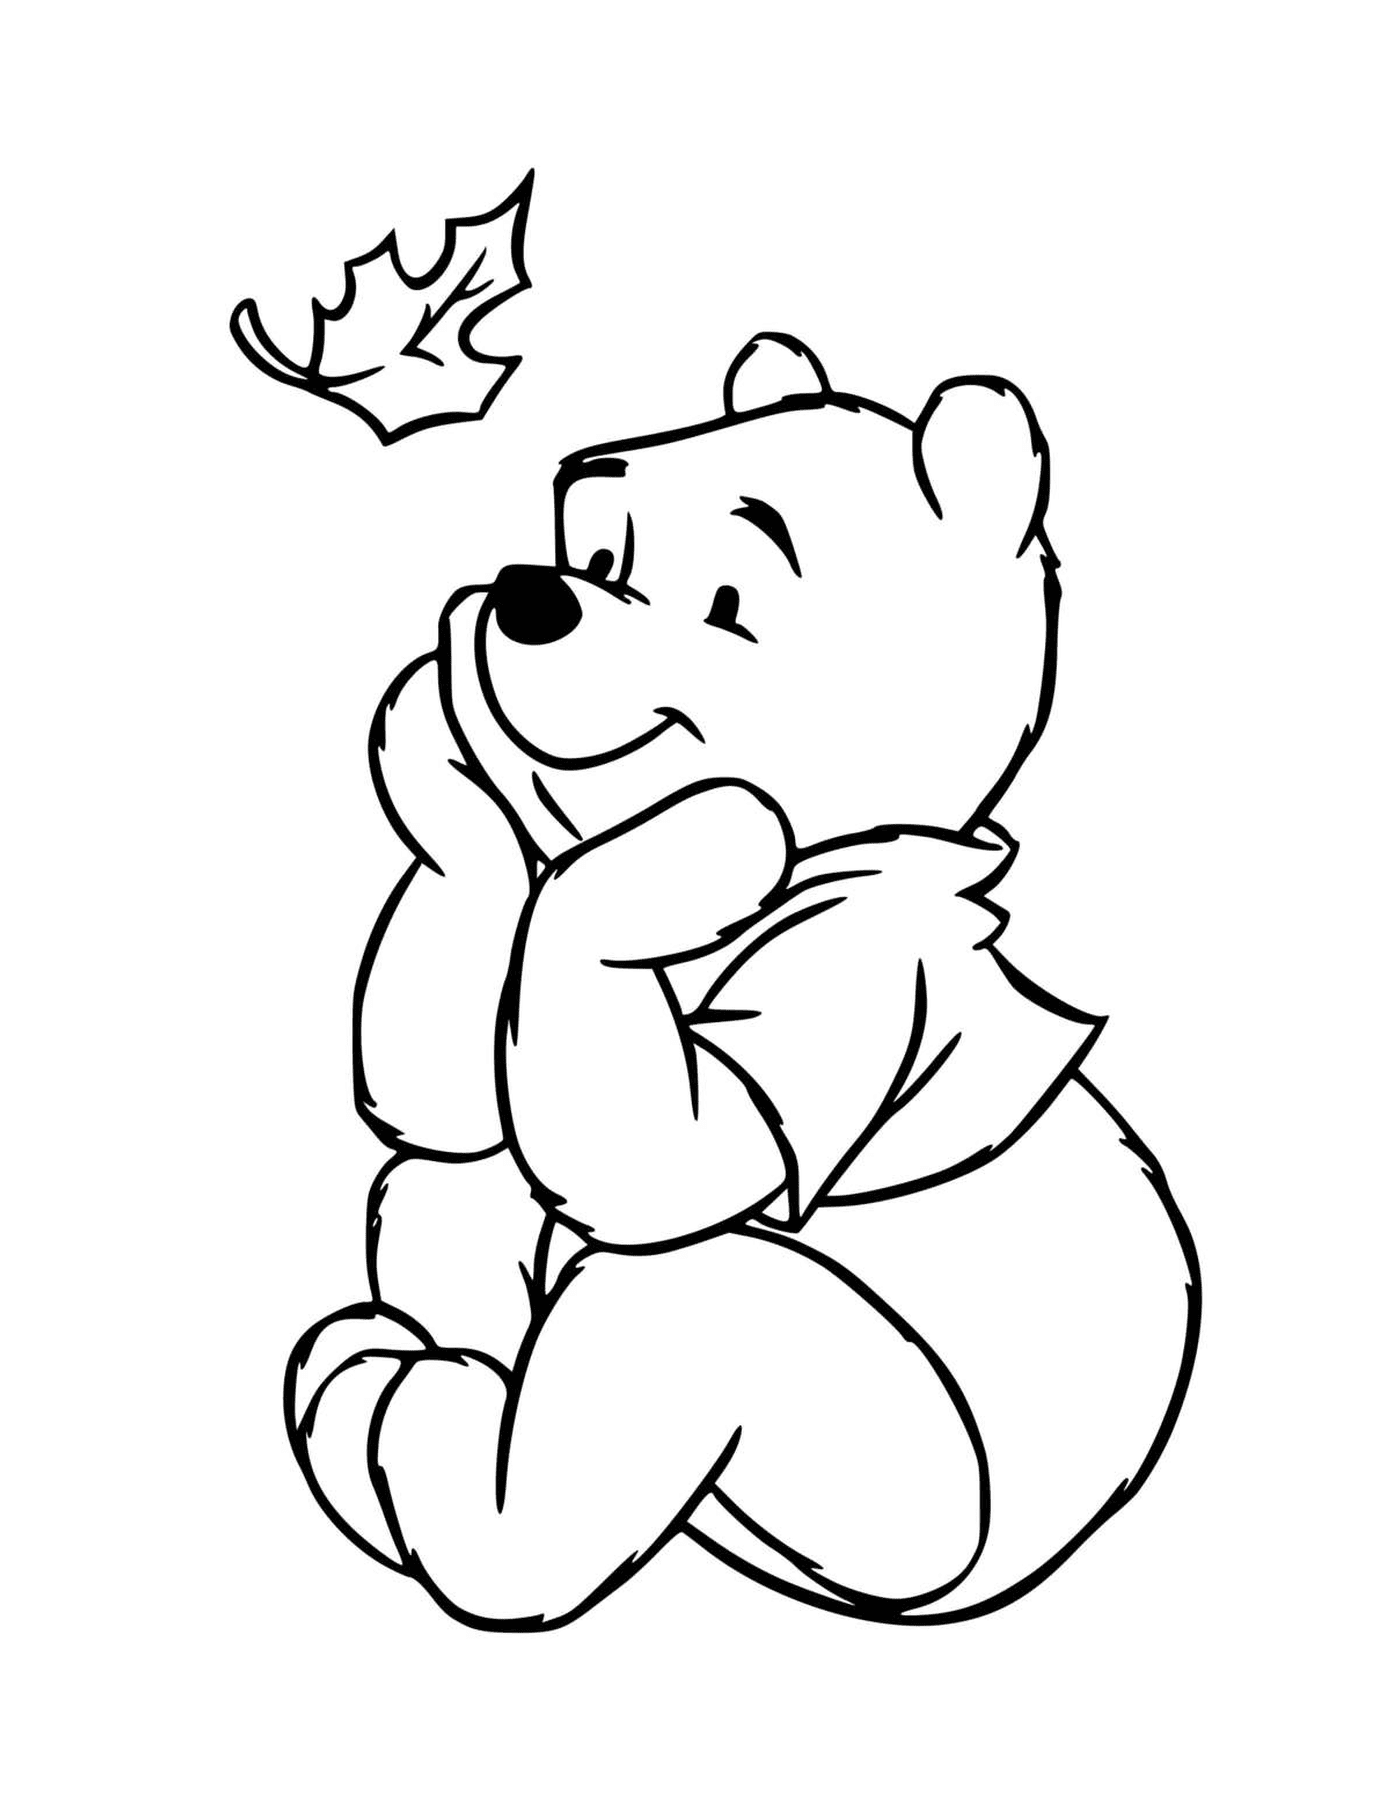  Winnie the bear in dreamer mode and hope 